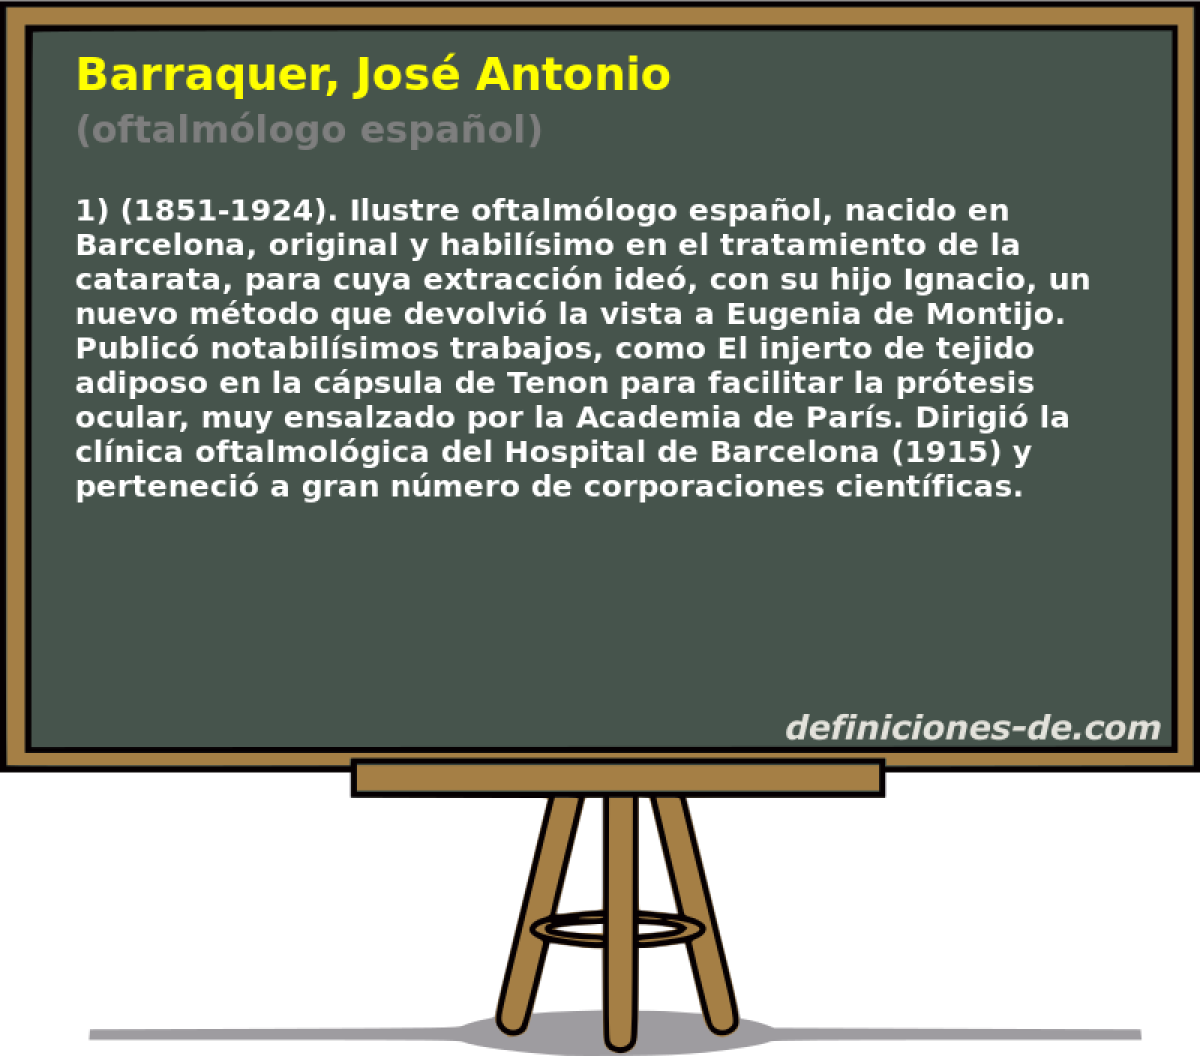 Barraquer, Jos Antonio (oftalmlogo espaol)